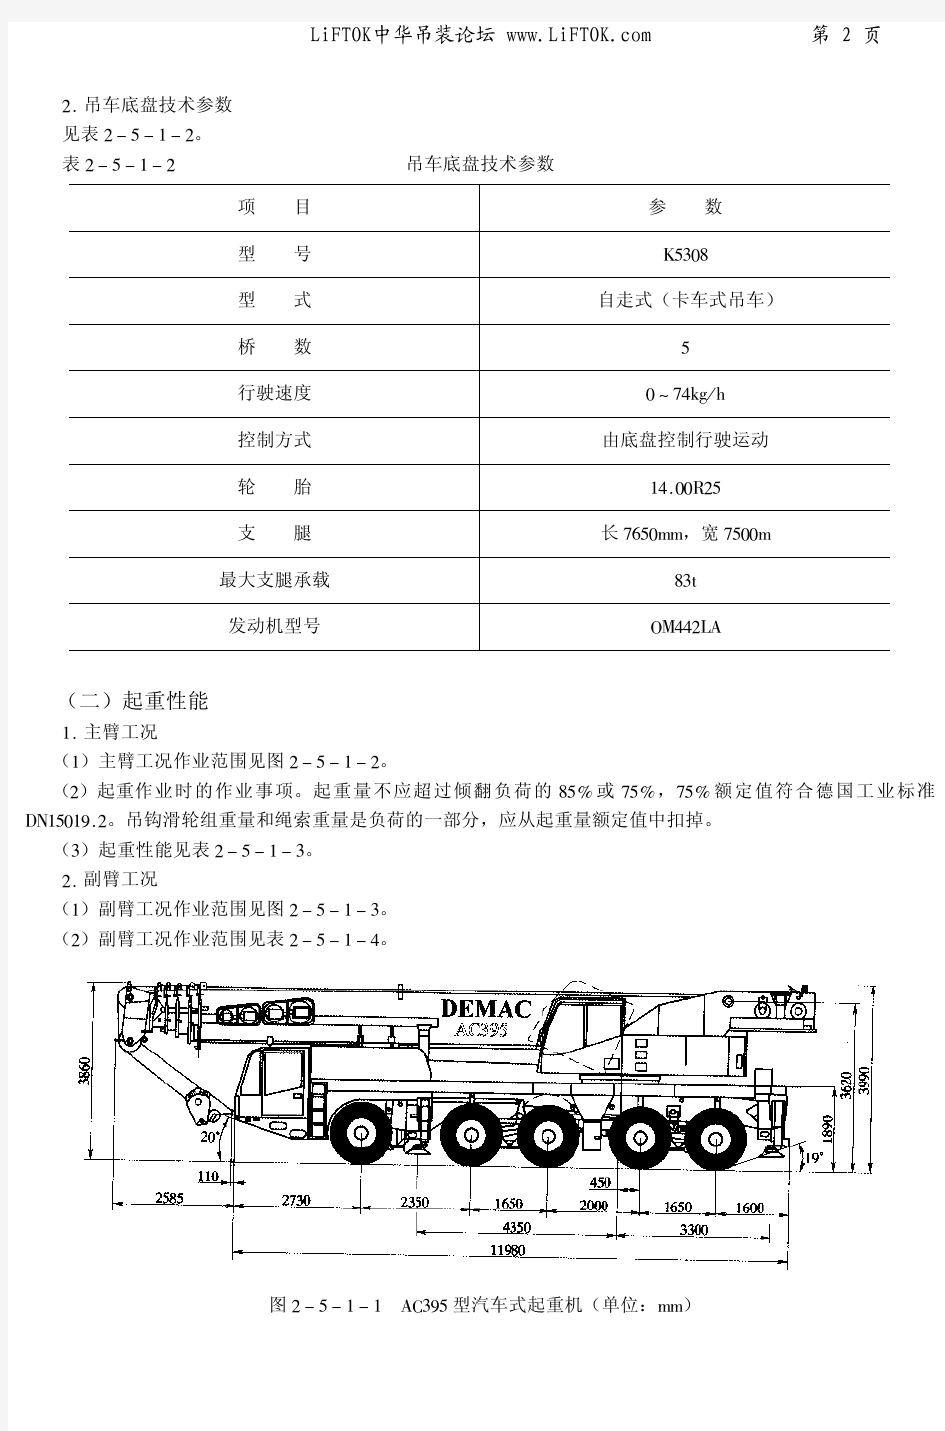 DEMAG-AC395型120吨汽车起重机性能-中文